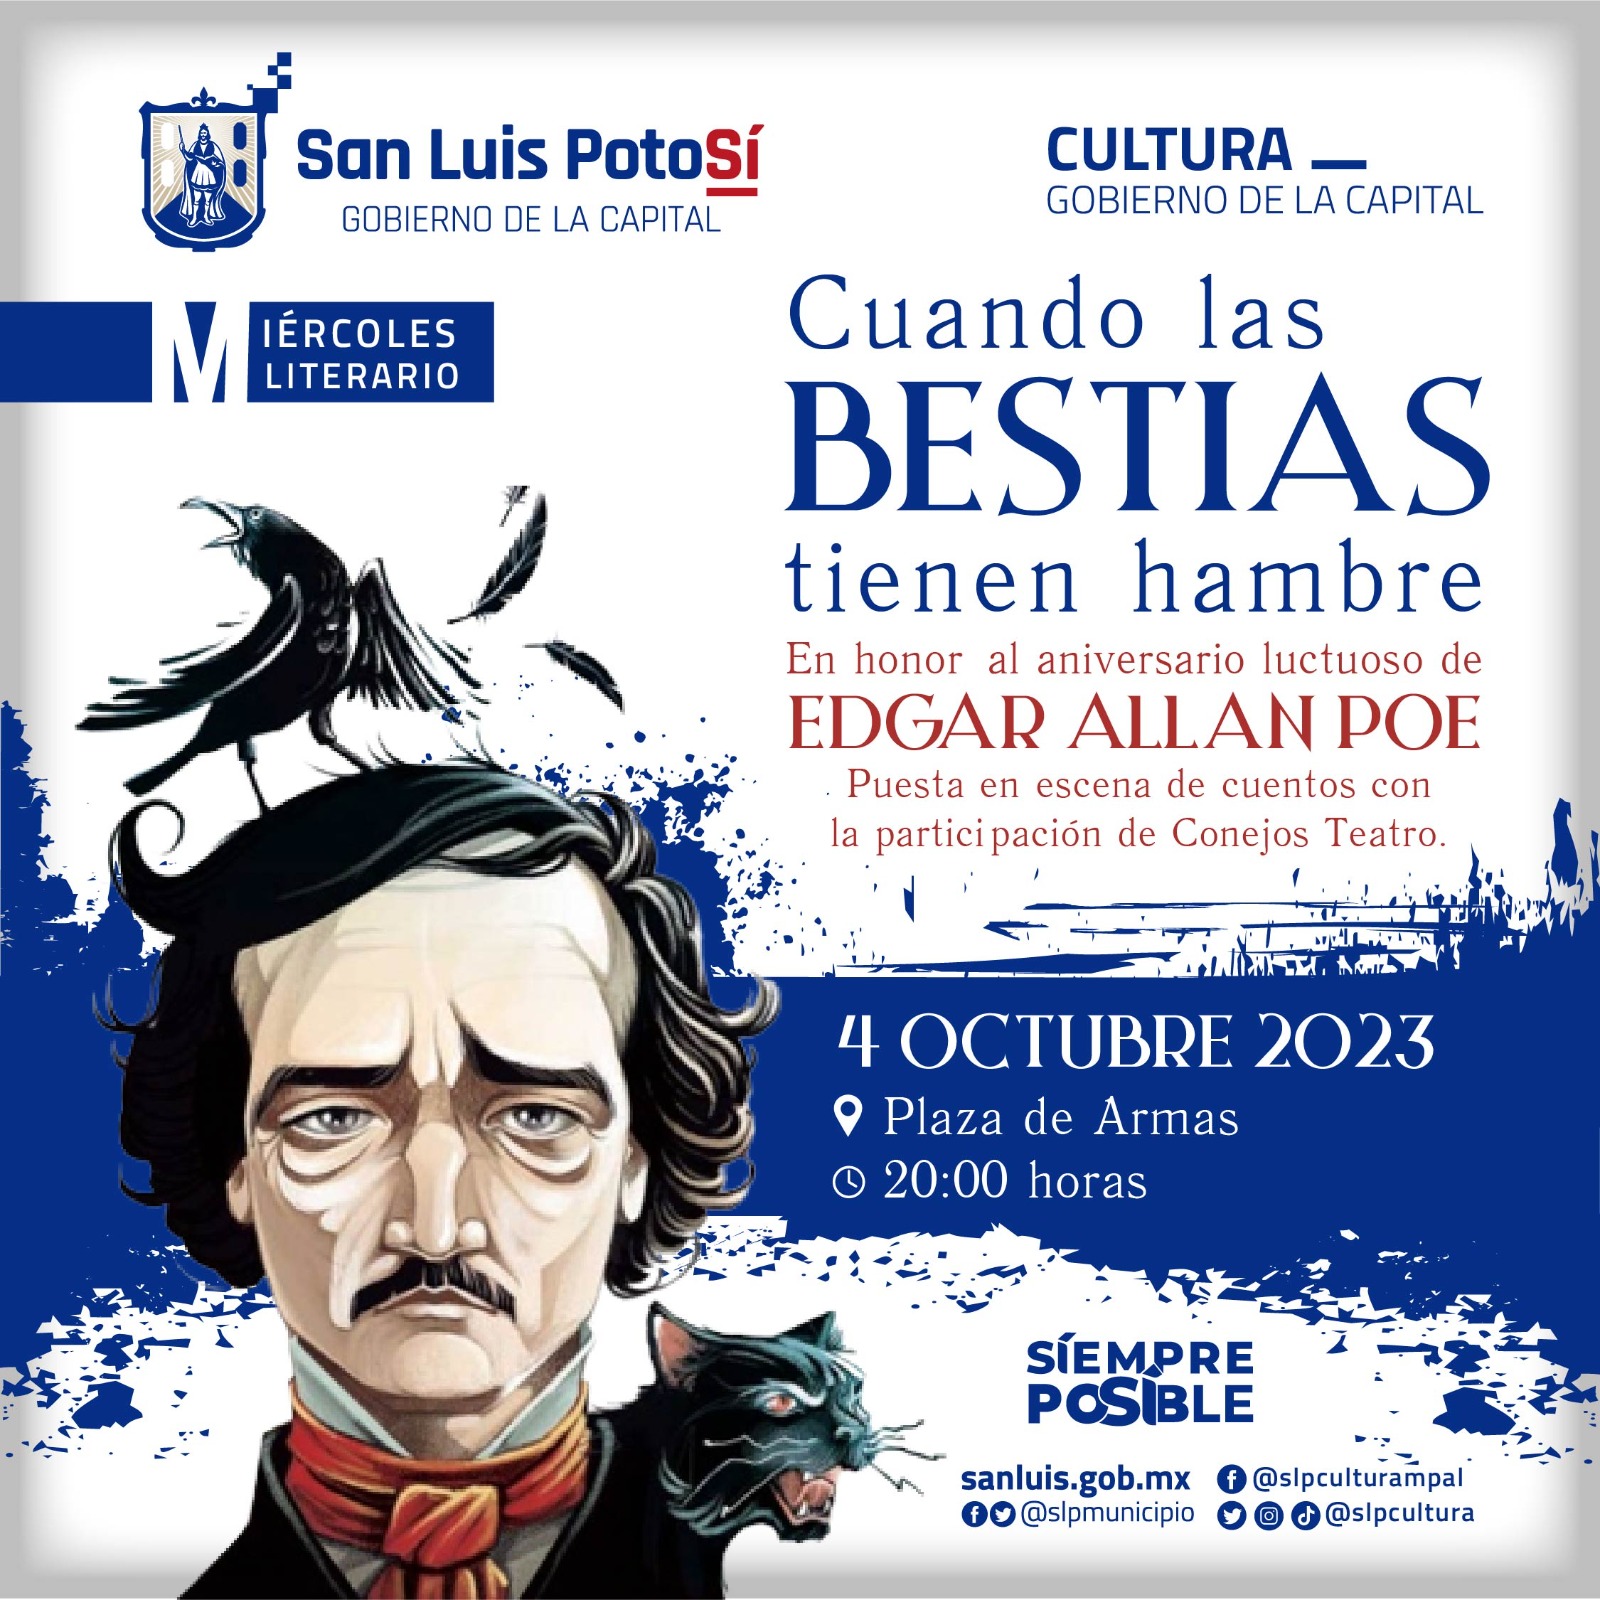 Cultura Municipal presenta su tradicional Miércoles Literario, con la puesta en escena de cuentos de Edgar Allan Poe y otros autores